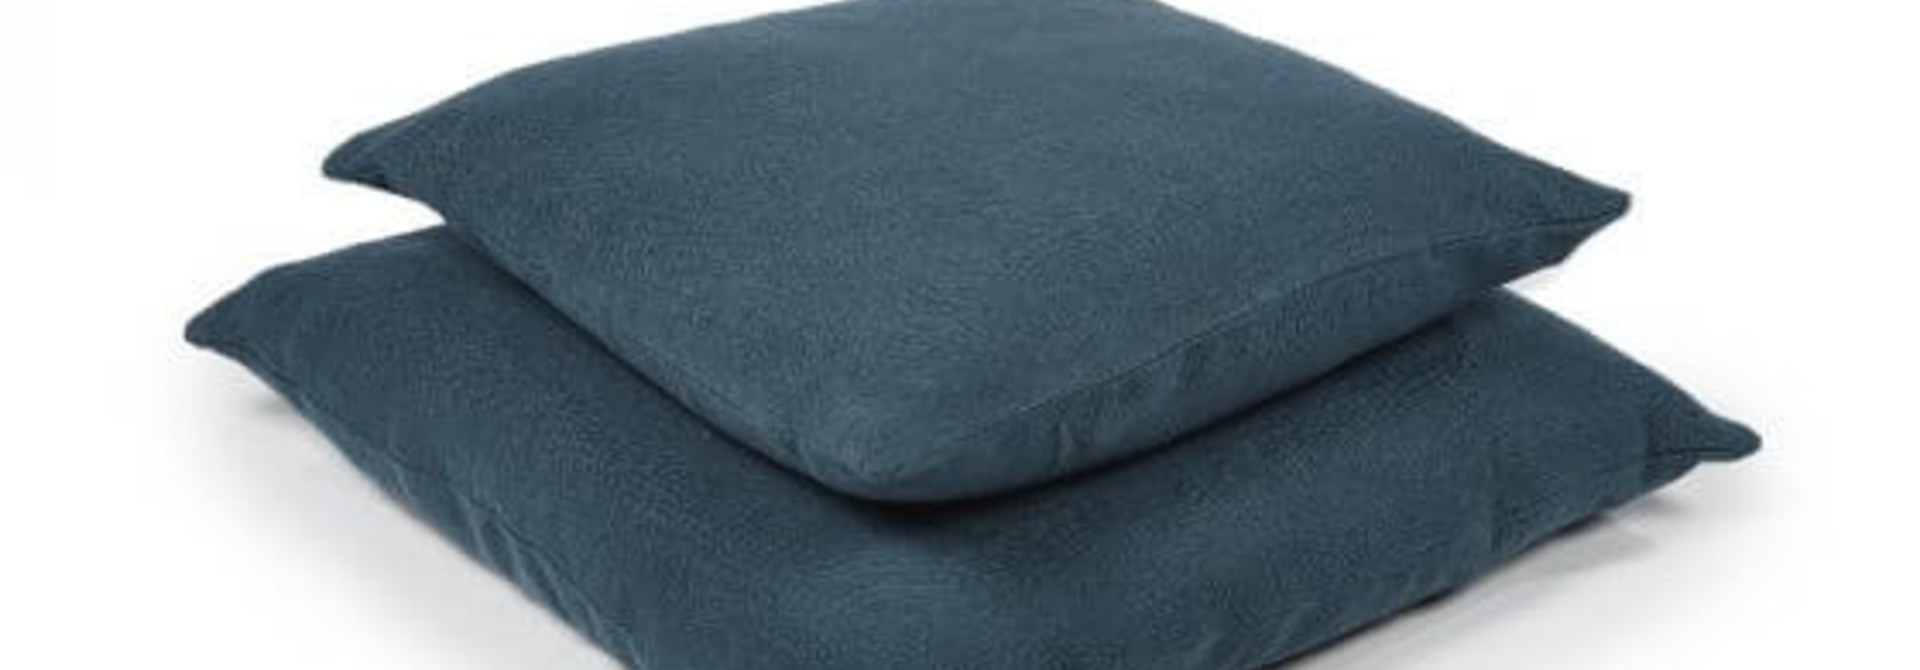 Cushion Cover - Hudson - Lge - Mercurio